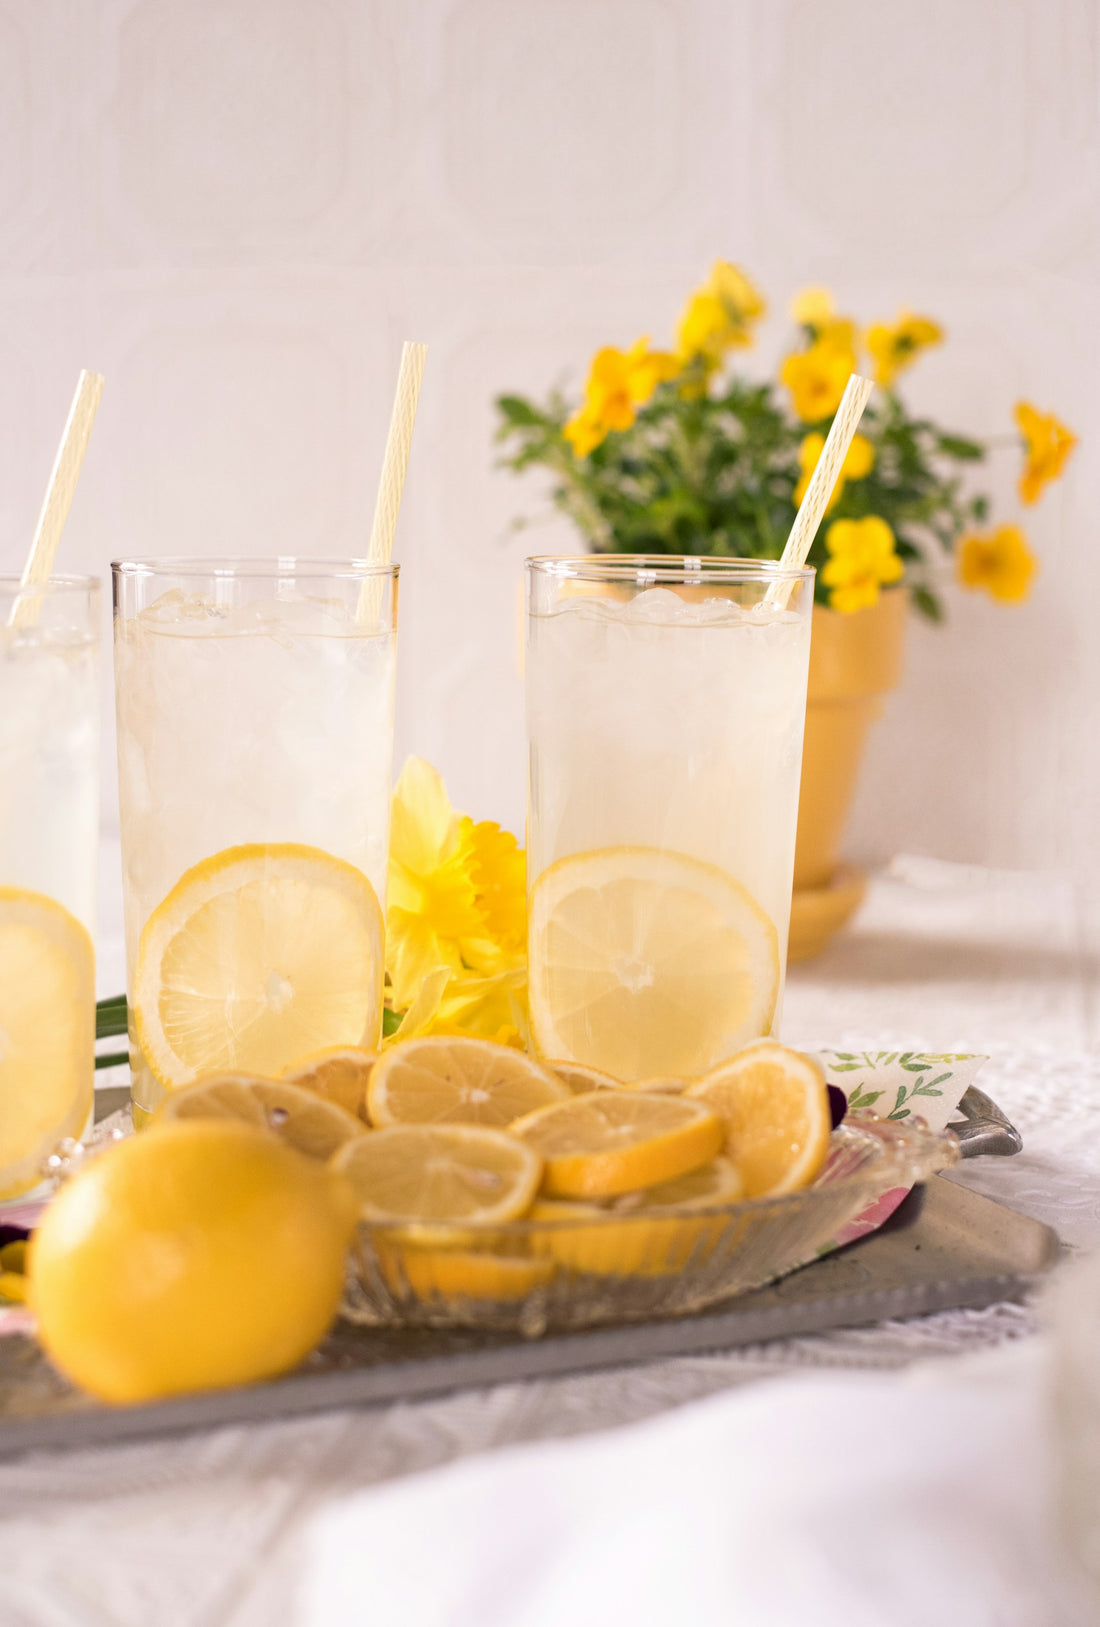 Is Lemonade Good for Diabetics